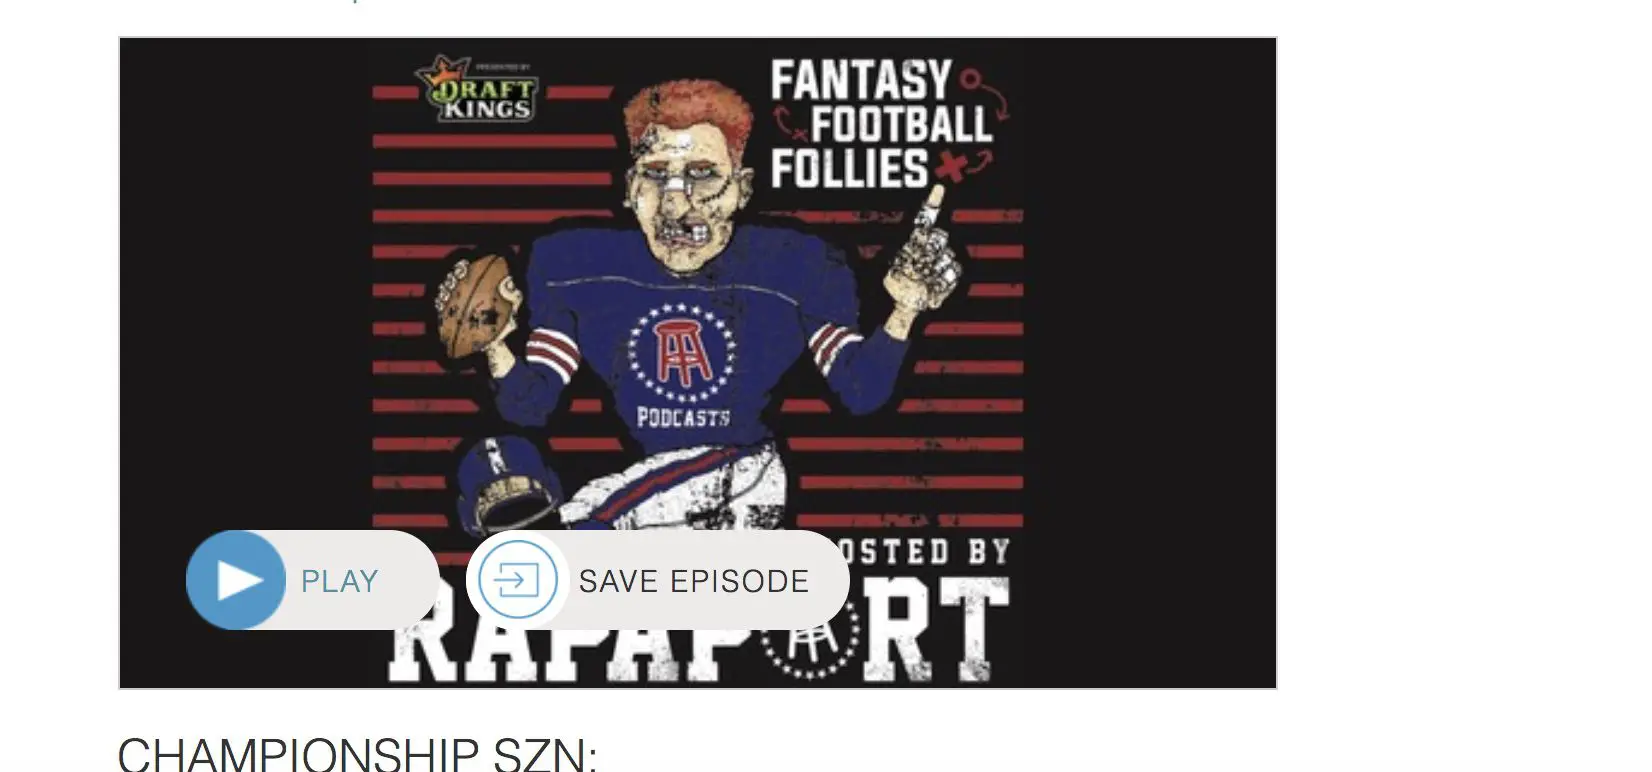 Captura de tela da página inicial do Fantasy Football Follies no Stitcher.